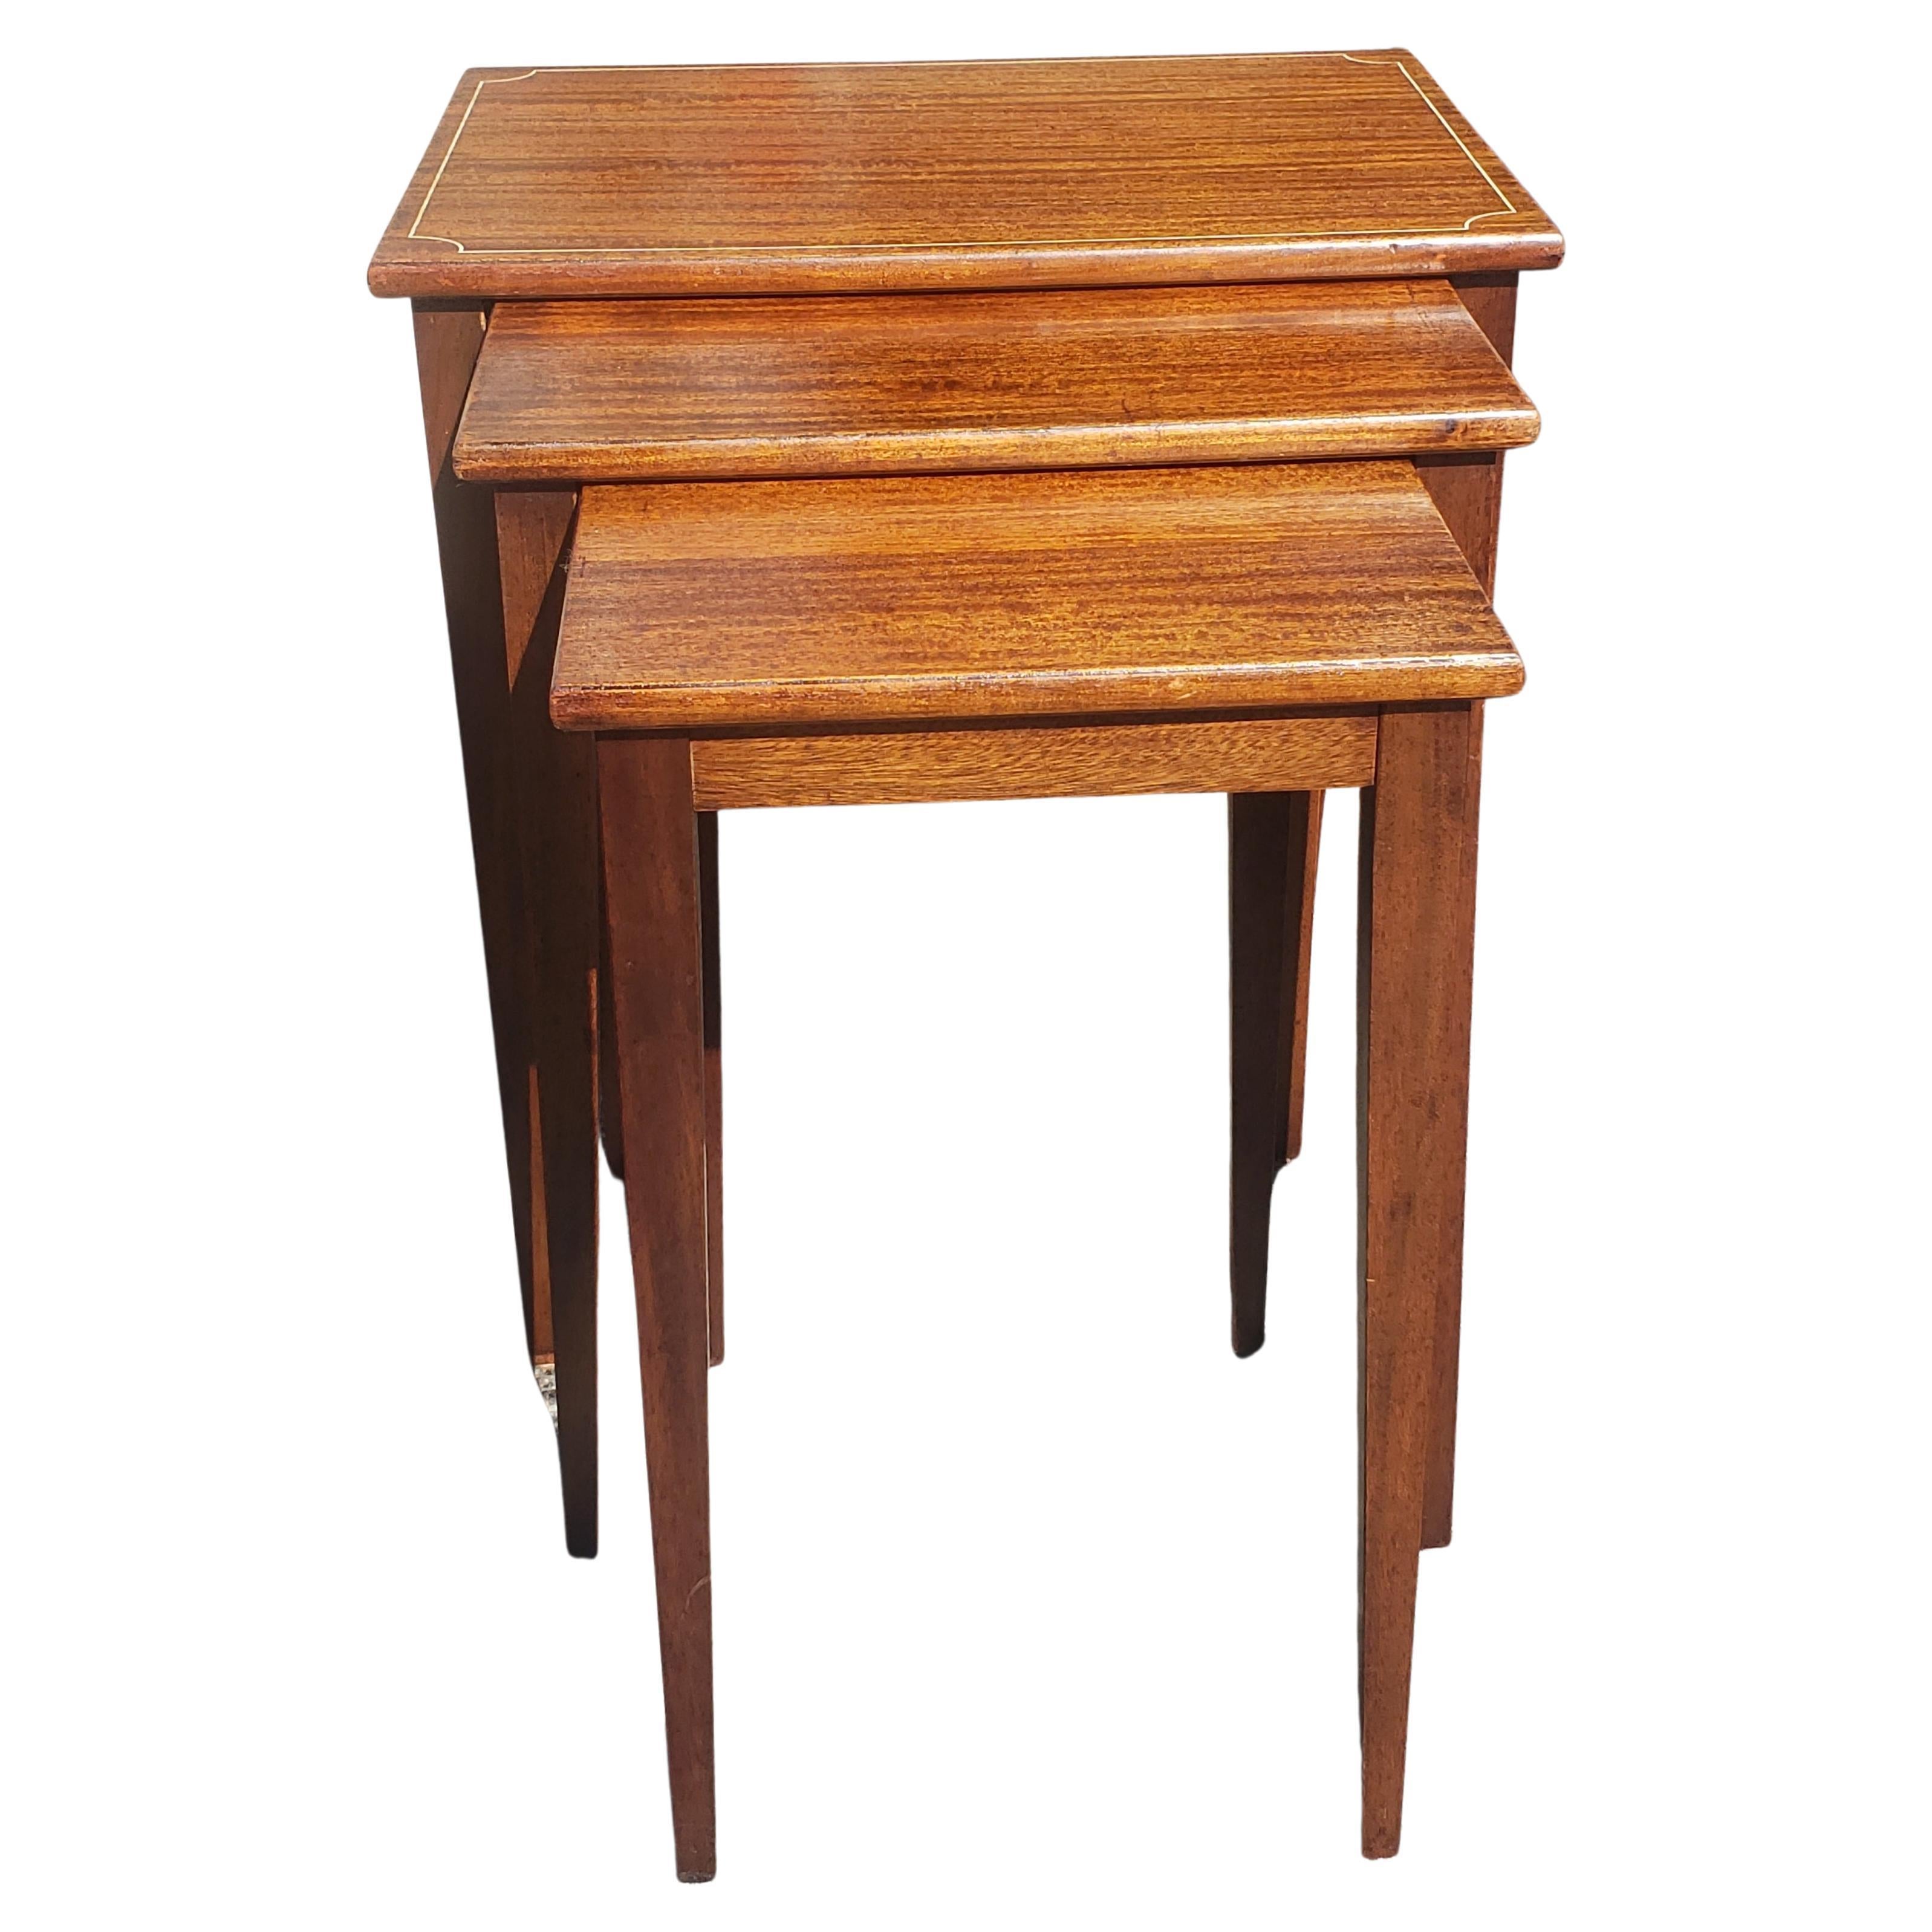 Ensemble de trois meubles Brandt Fine Furniture des années 1950, entièrement remis à neuf.  Tables gigognes en acajou véritable. La plus grande table mesure 24